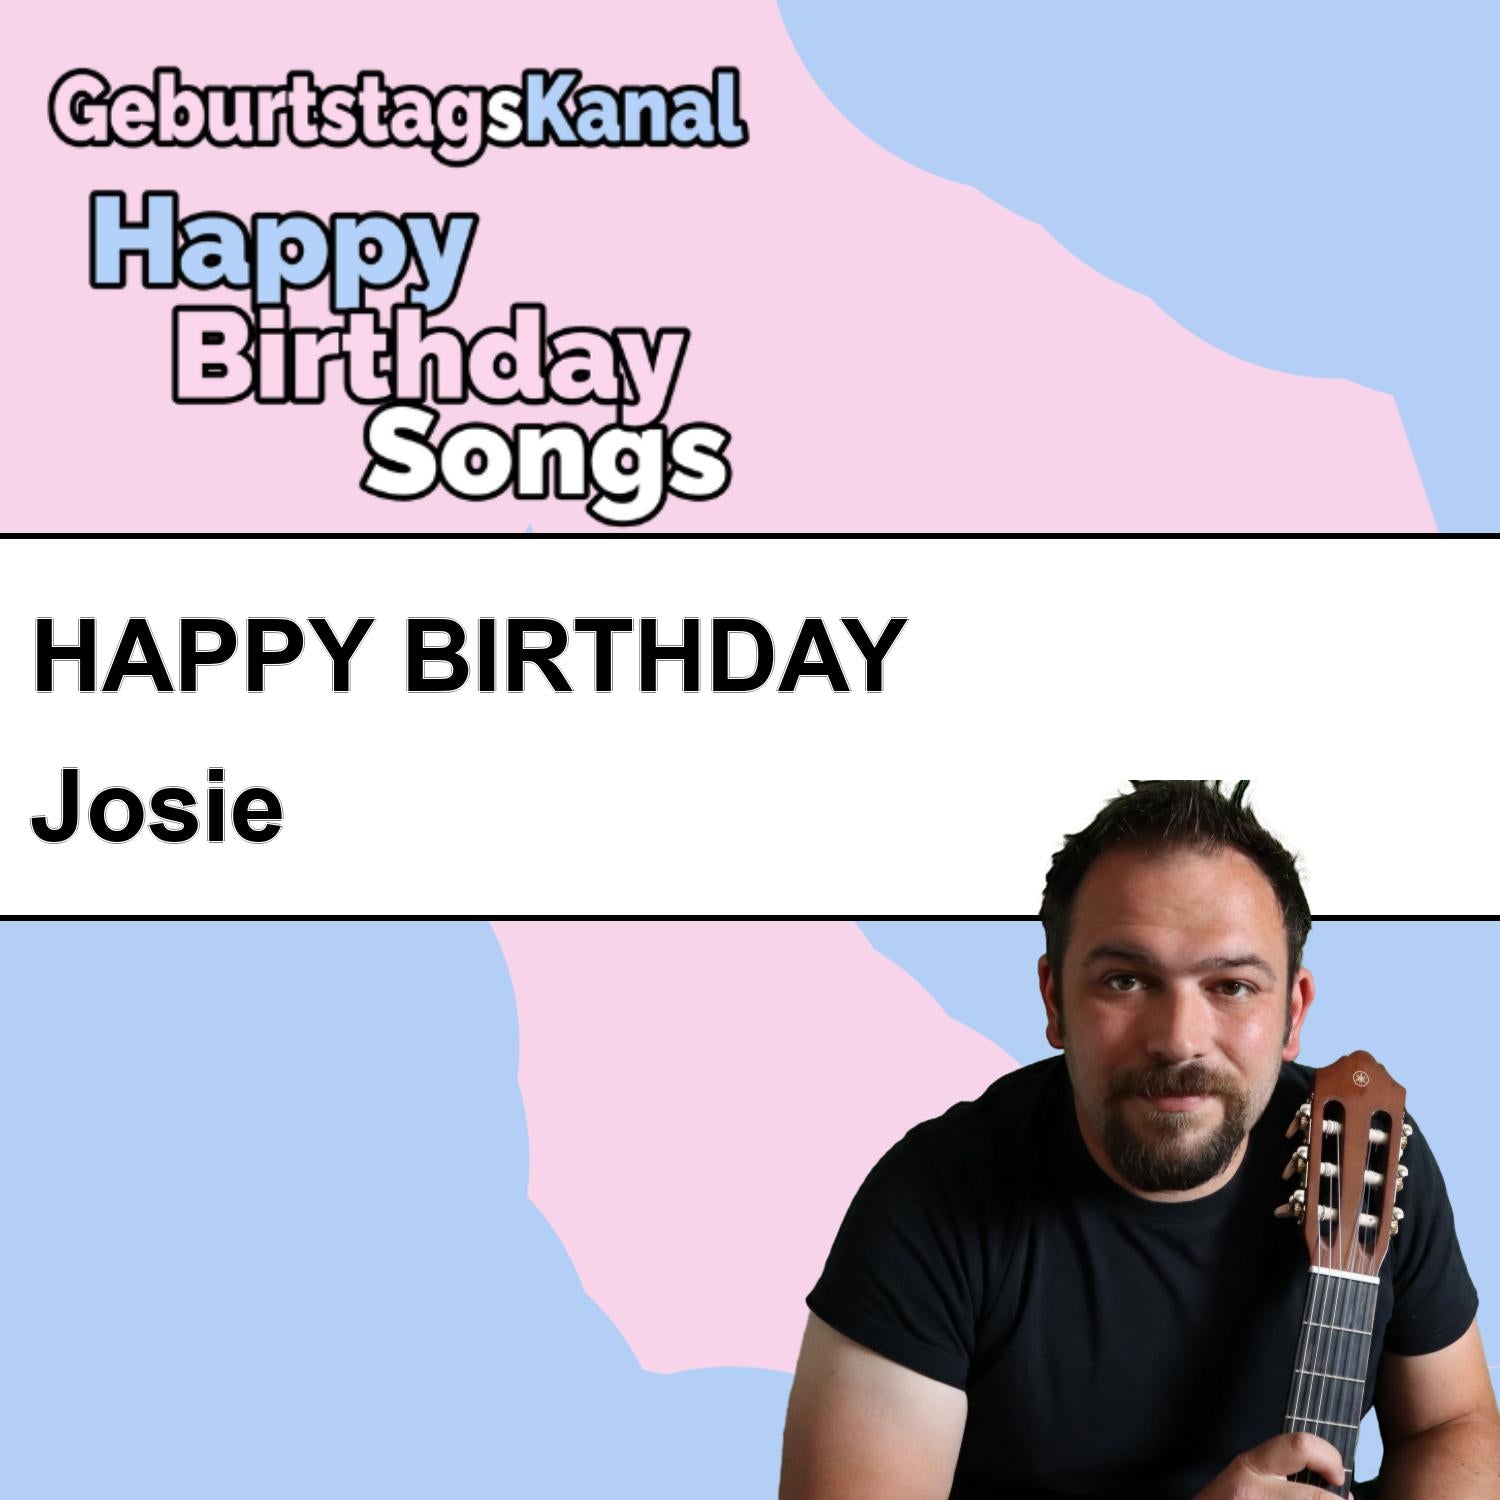 Produktbild Happy Birthday to you Josie mit Wunschgrußbotschaft